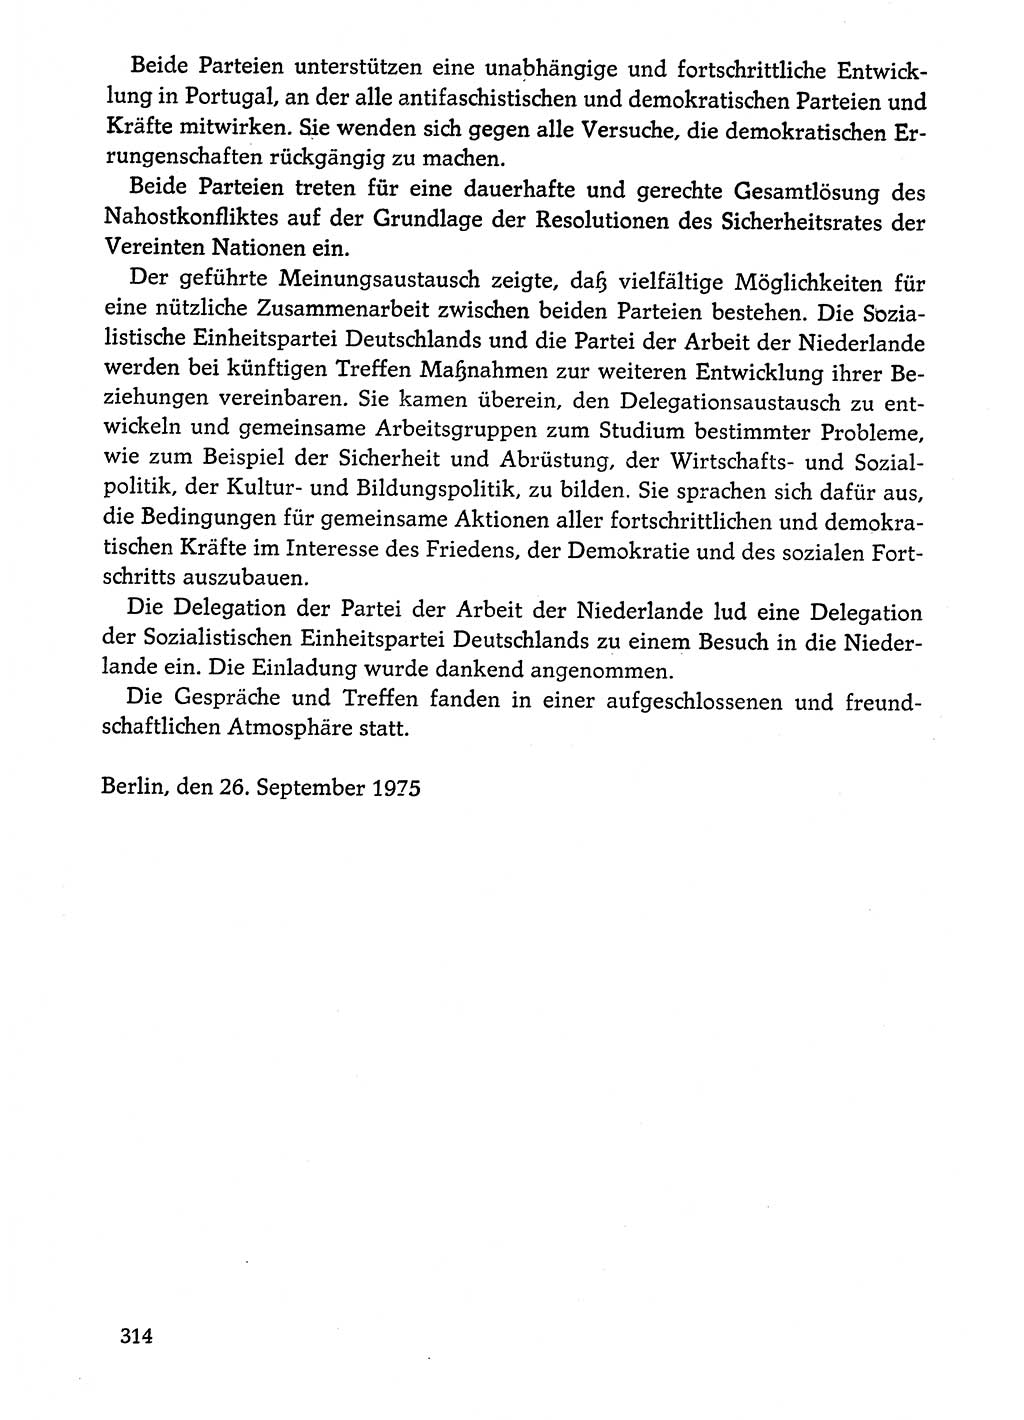 Dokumente der Sozialistischen Einheitspartei Deutschlands (SED) [Deutsche Demokratische Republik (DDR)] 1974-1975, Seite 314 (Dok. SED DDR 1978, Bd. ⅩⅤ, S. 314)